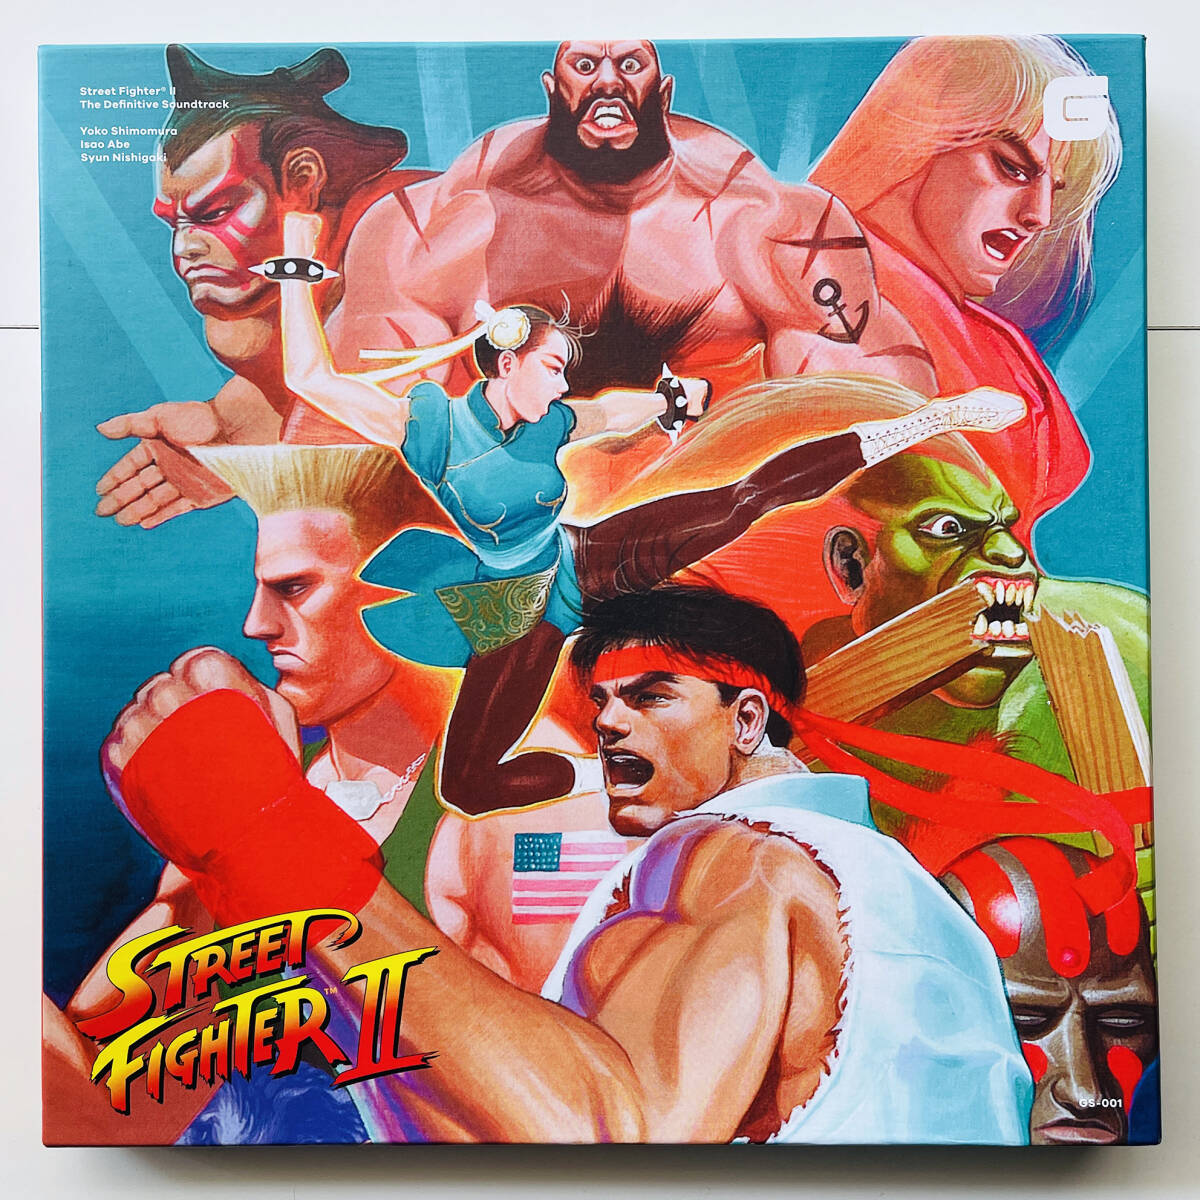 貴重 未使用カラーレコード×4 + ボックス〔 Street Fighter II The Definitive Soundtrack 〕ストリートファイター サウンドトラック_画像1